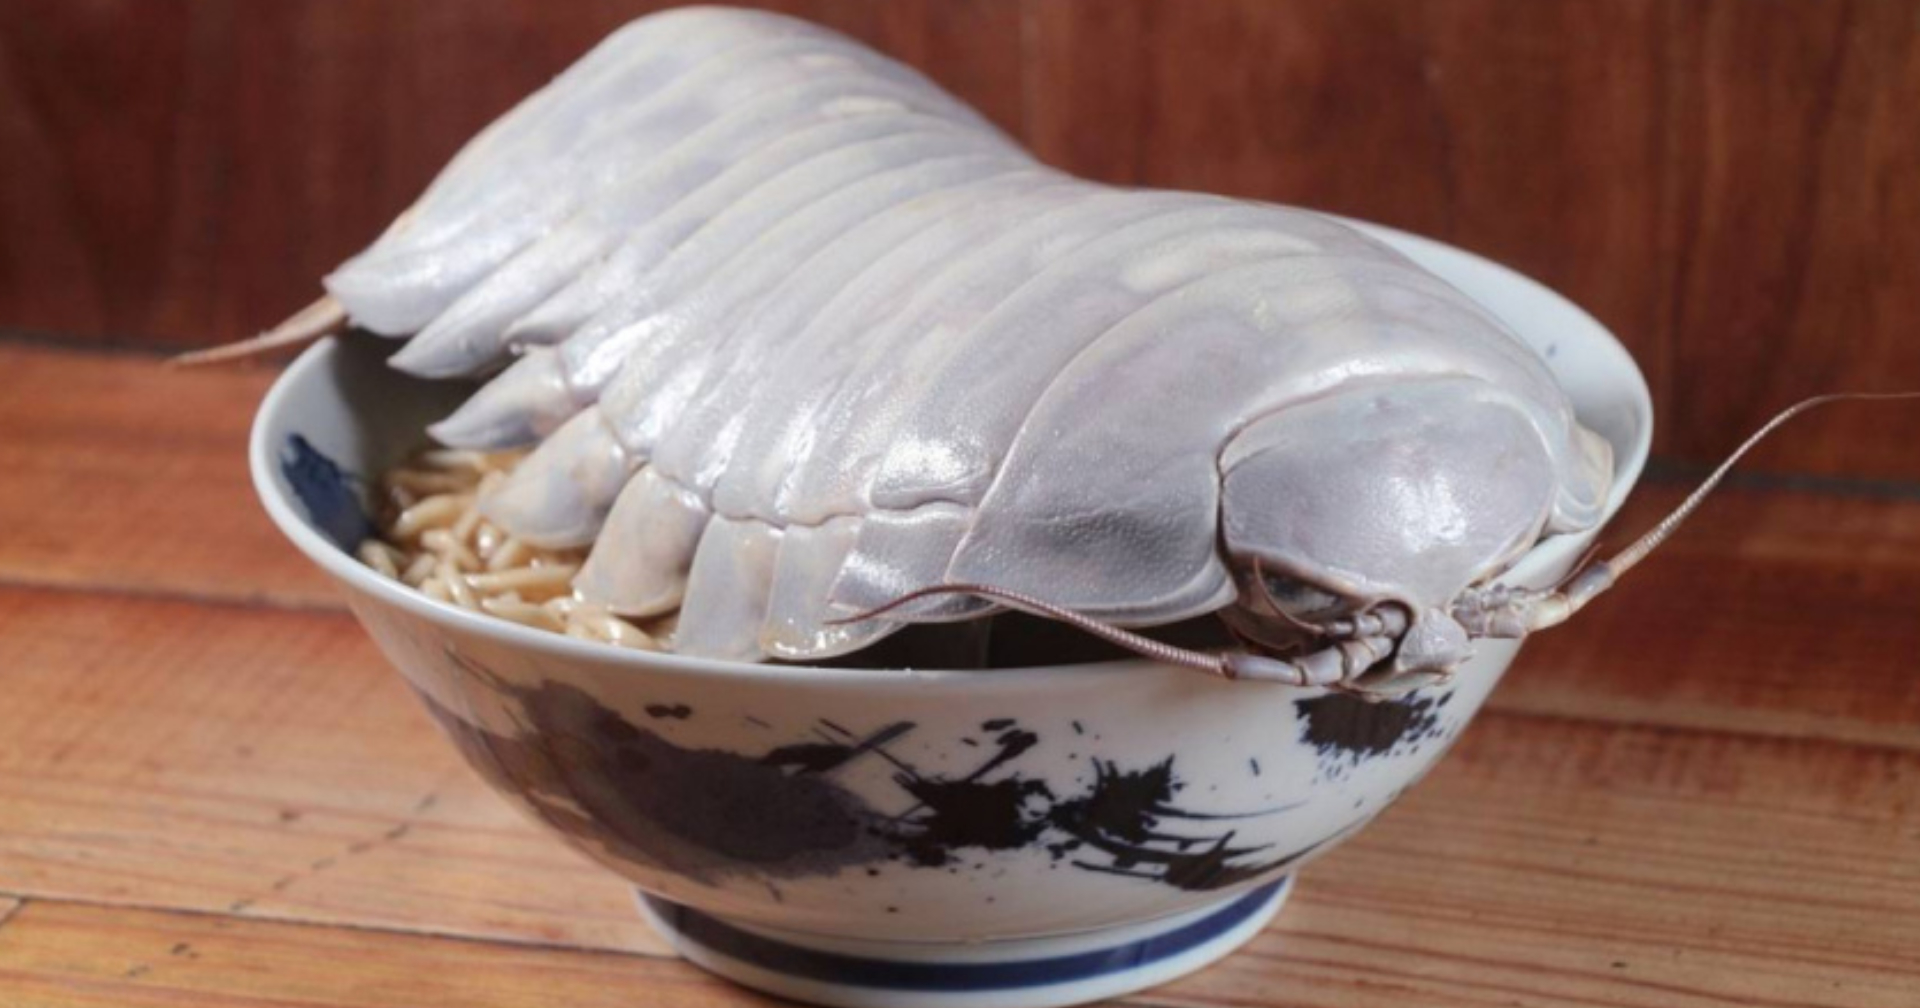 ร้านราเมงไต้หวัน ชวนชิมเมนูใหม่ทำจากซุปไก่ท็อปด้วย “ไอโซพอดยักษ์” สัตว์ทะเลน้ำลึกหายาก